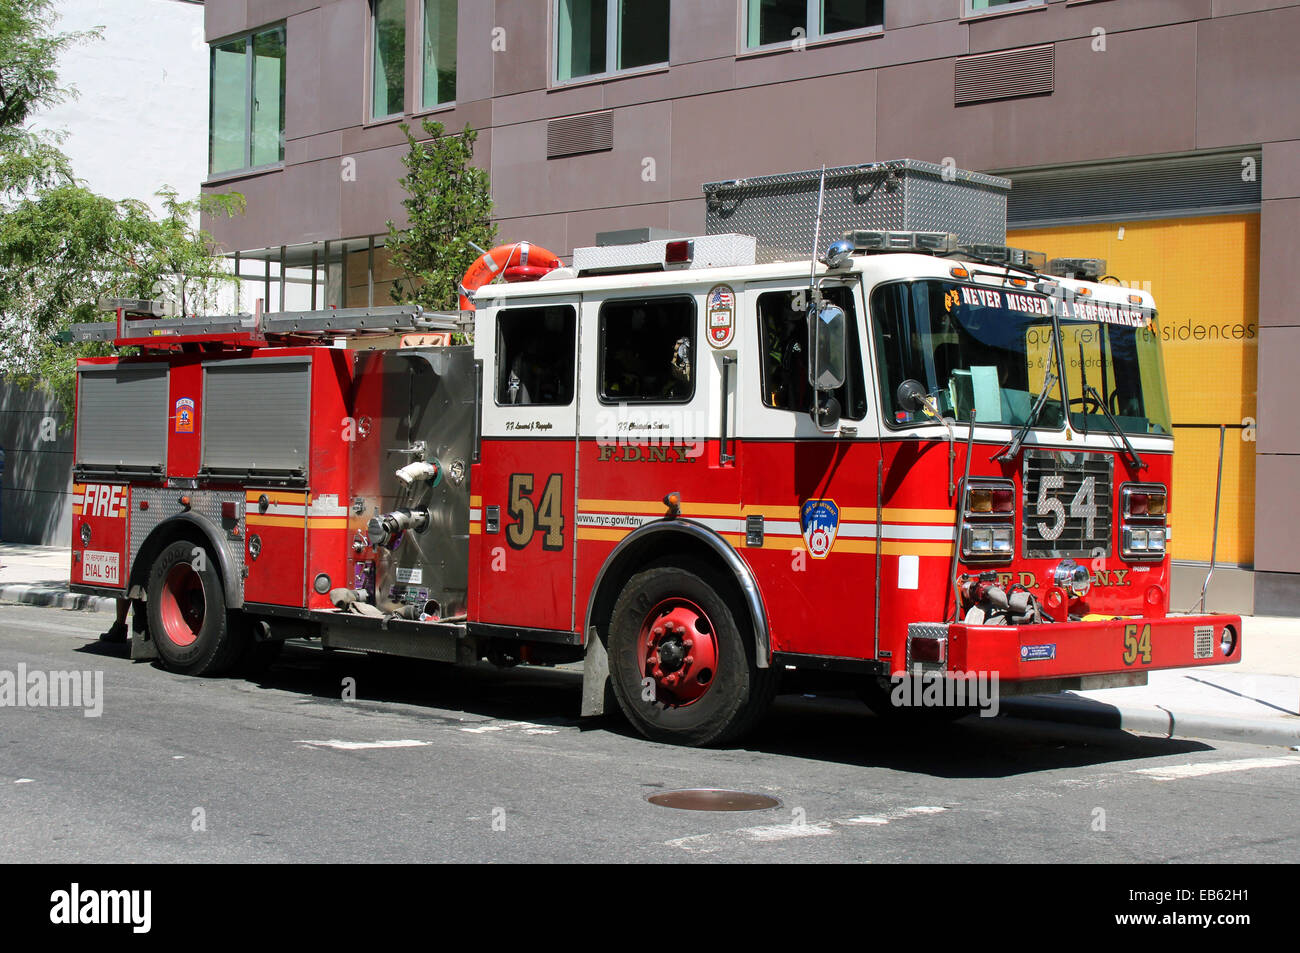 City of New York Fire Department Feuerwehrauto, von Motor Company 54 betrieben.  Geparkt in West 46th Street, Manhattan. Stockfoto